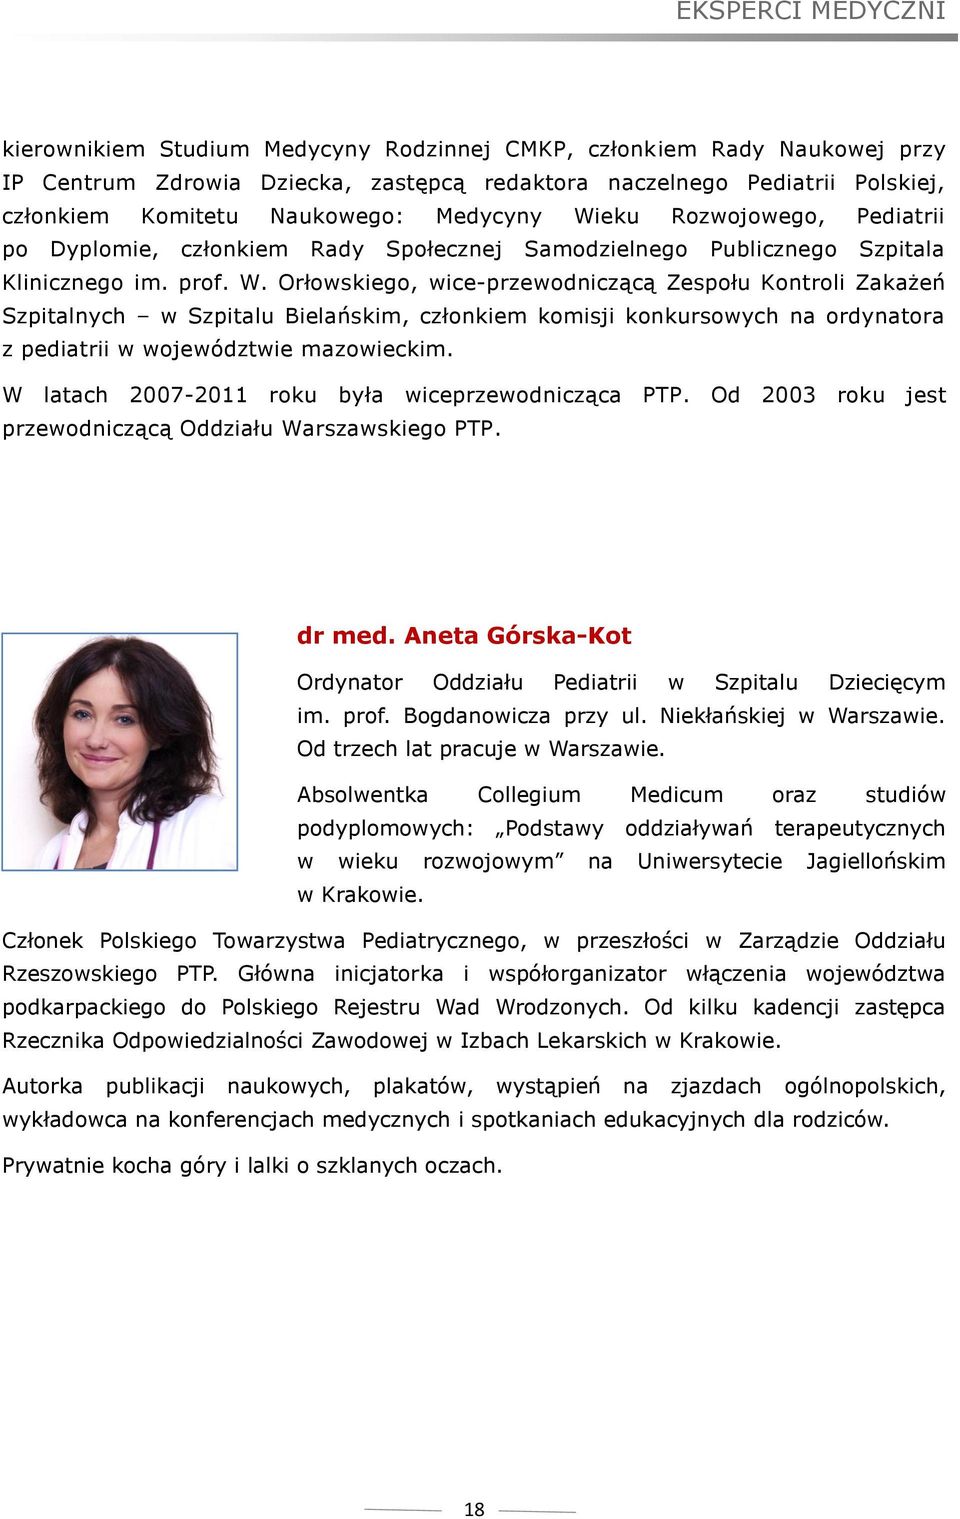 W latach 2007-2011 roku była wiceprzewodnicząca PTP. Od 2003 roku jest przewodniczącą Oddziału Warszawskiego PTP. dr med. Aneta Górska-Kot Ordynator Oddziału Pediatrii w Szpitalu Dziecięcym im. prof.